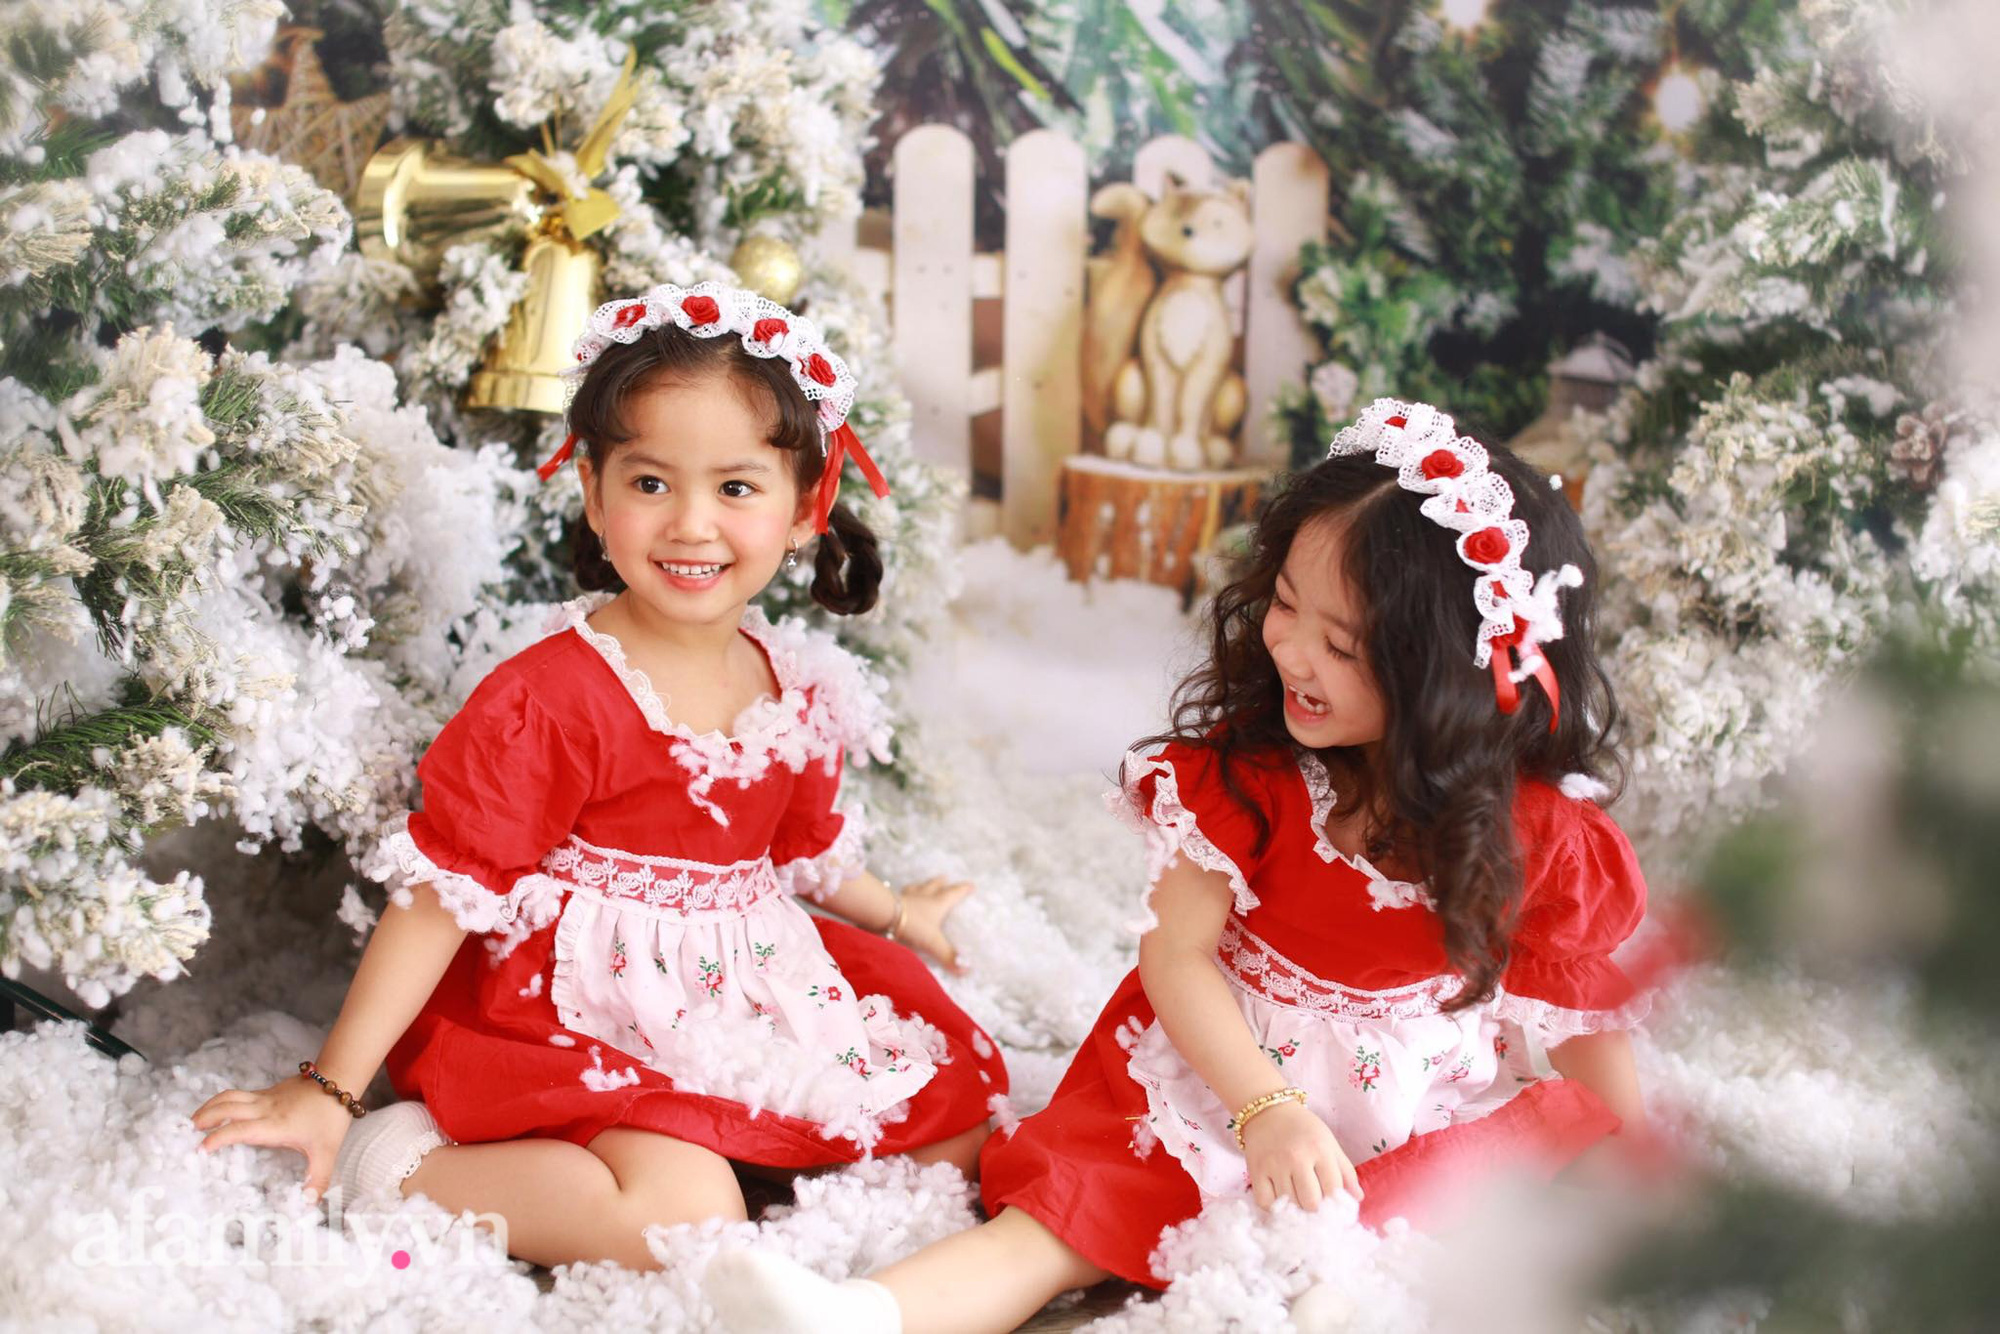 Giáng sinh là ngày lễ đặc biệt và thú vị cho trẻ em. Với những bức ảnh noel dành riêng cho bé, bạn sẽ được chiêm ngưỡng những hình ảnh tuyệt đẹp về mùa lễ hội này sẽ khiến bé và gia đình thật sự hứng khởi và noel nhiệm.